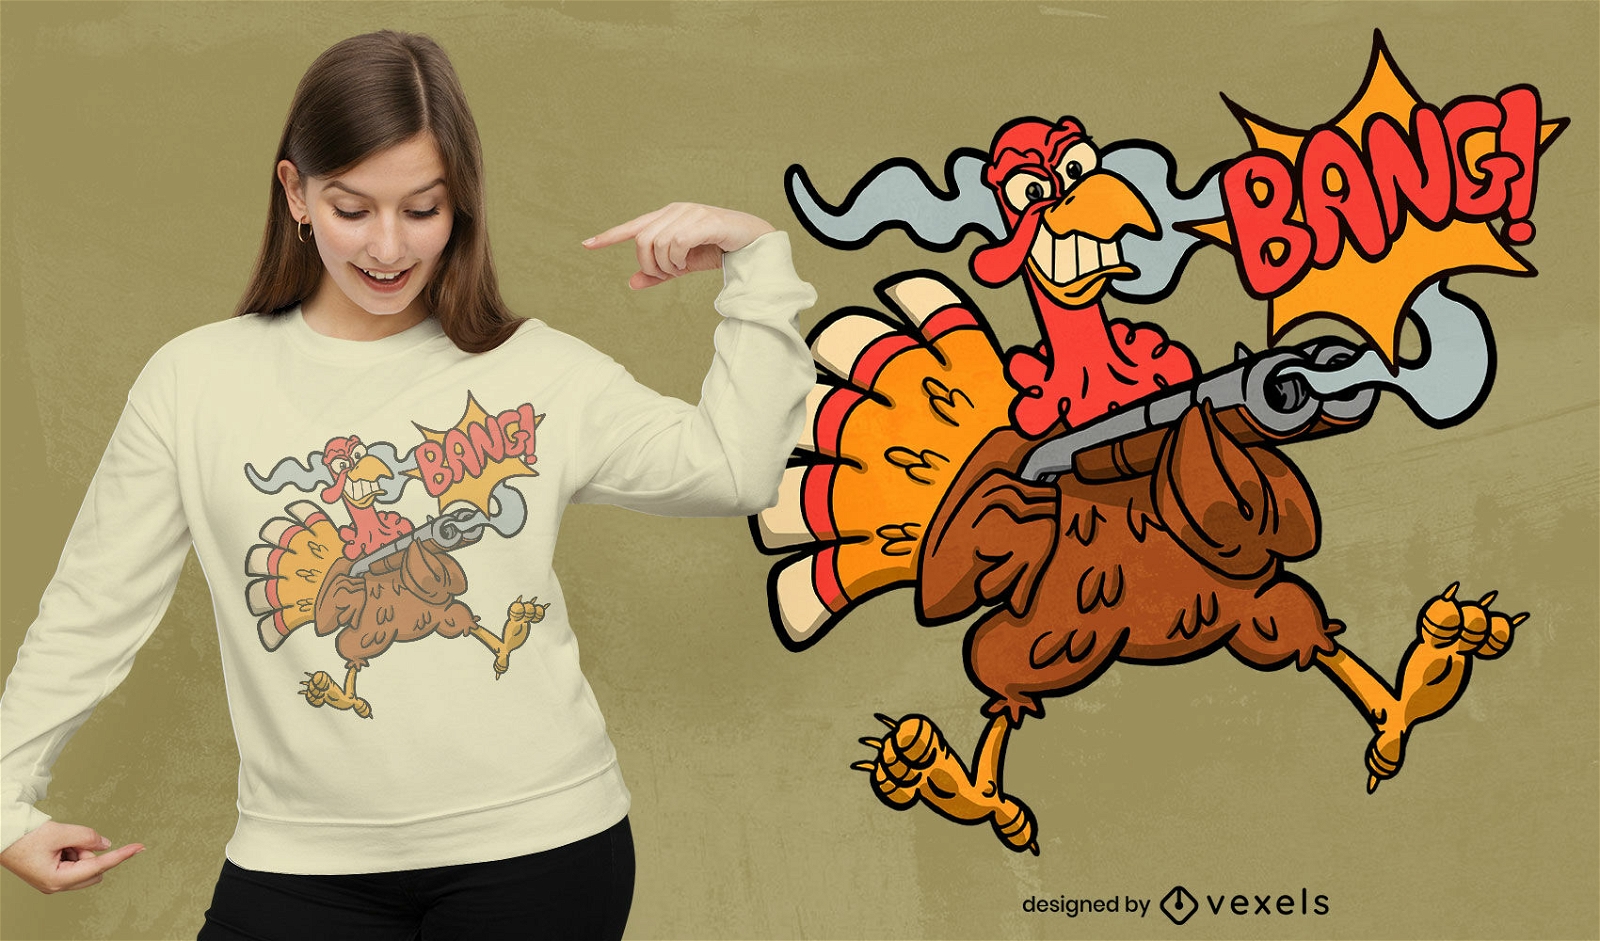 Bang shotgun turkey t-shirt design